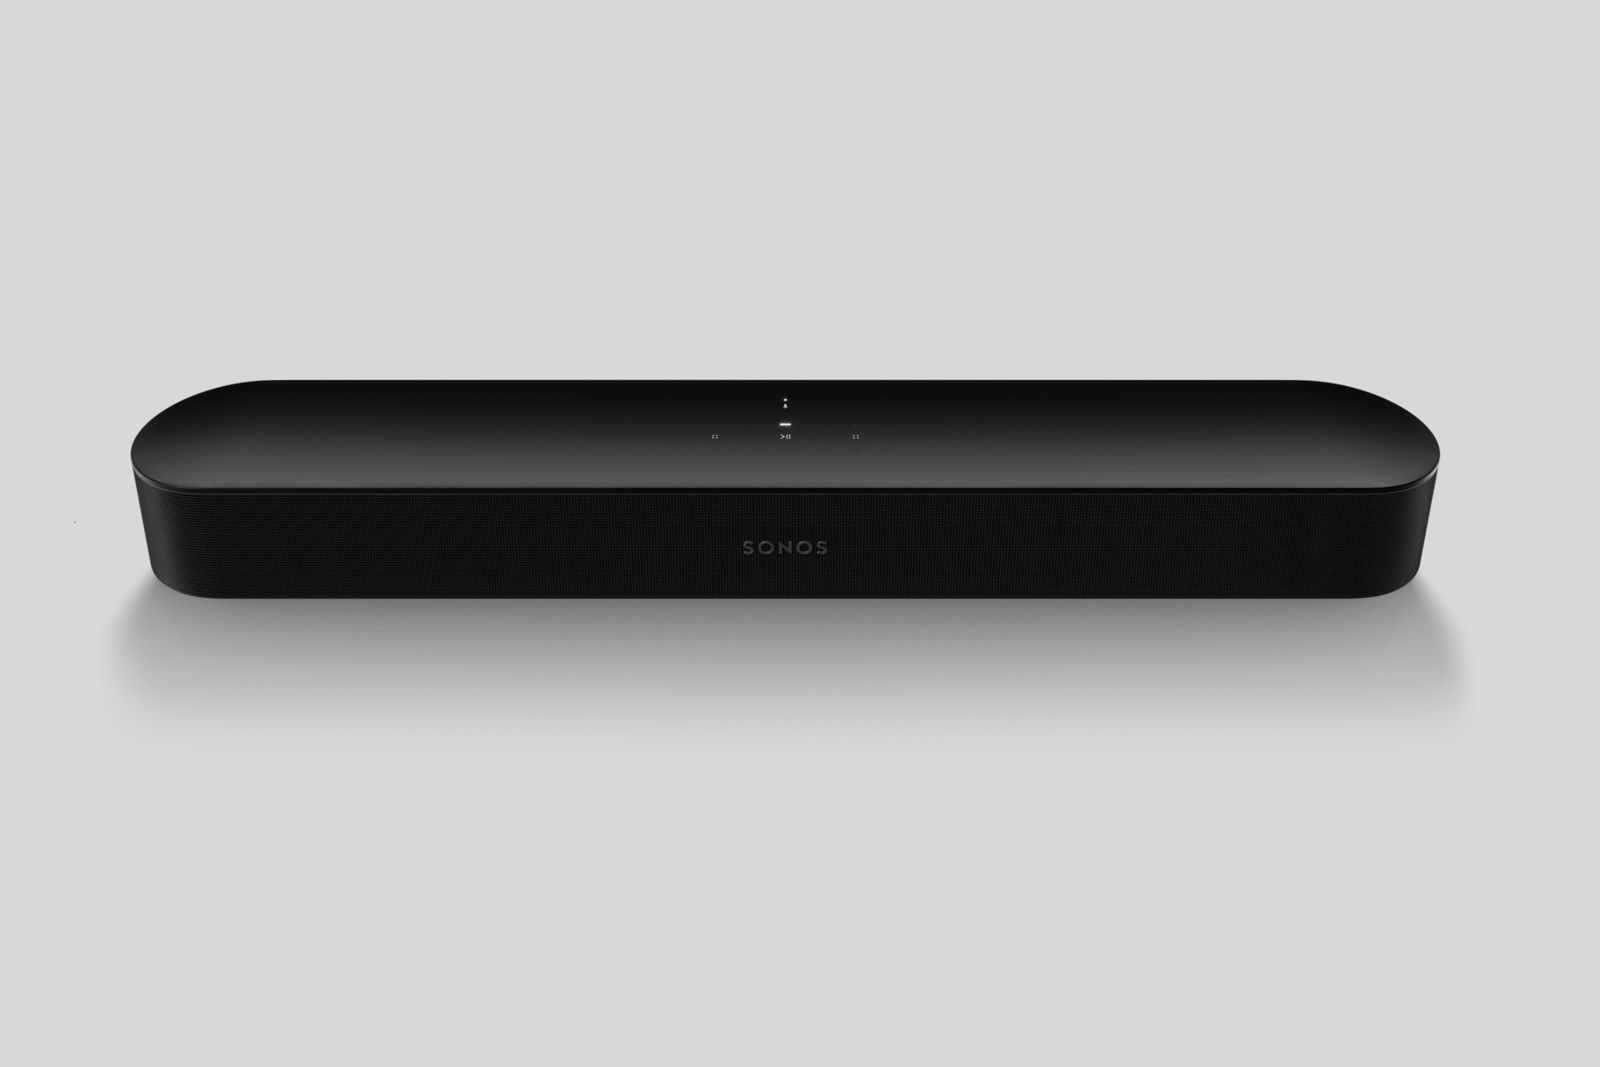 El altavoz portátil y barato de Sonos cuenta con AirPlay 2 y es